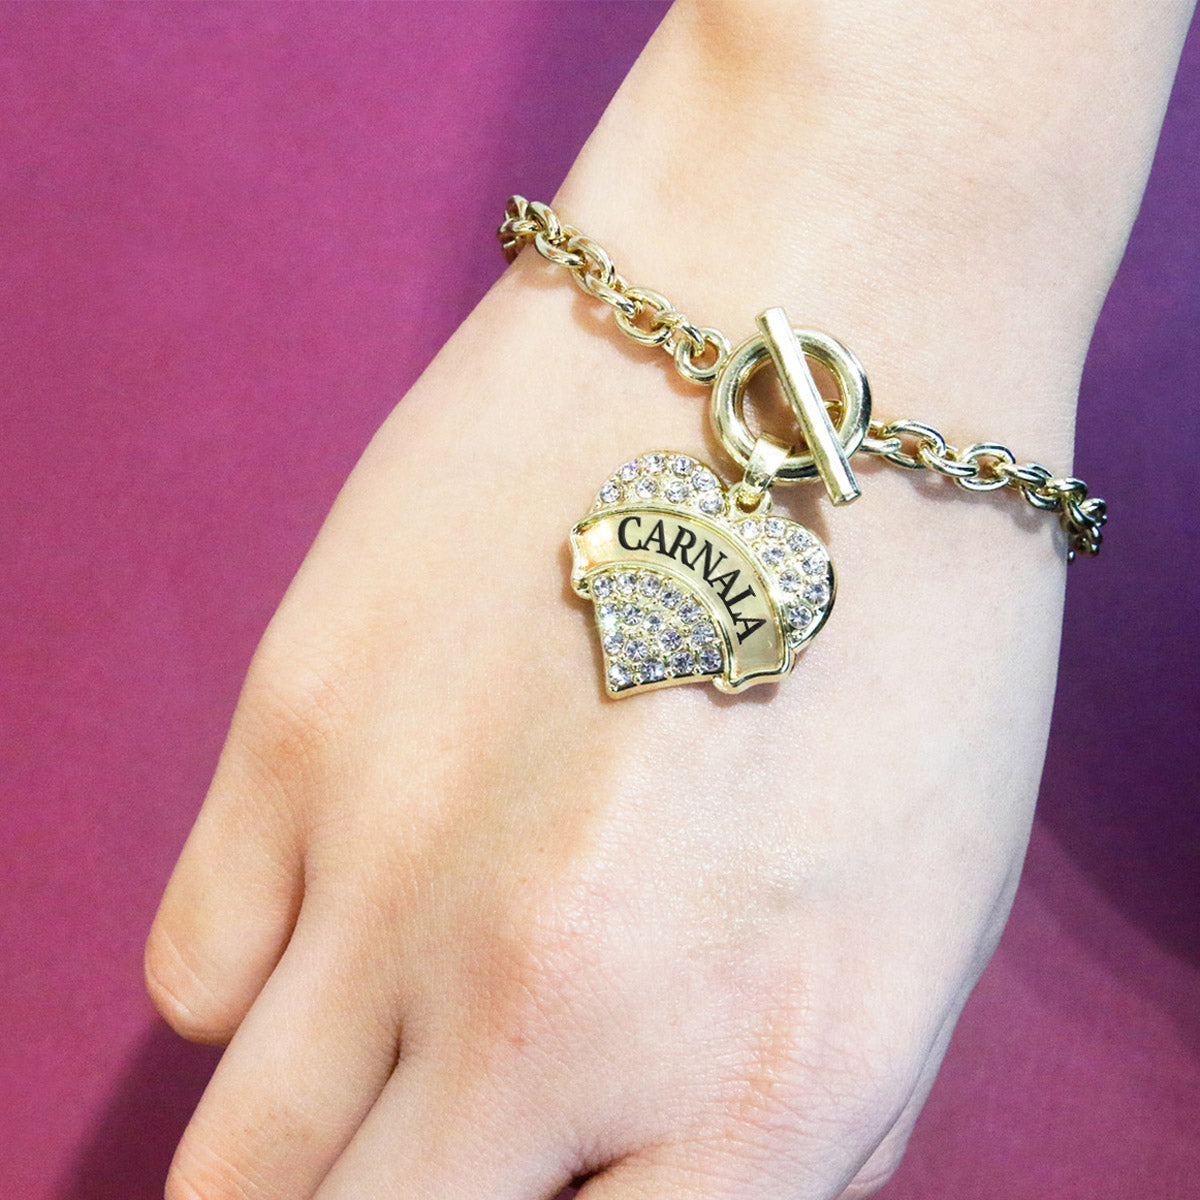 Gold Carnala - Sister Pave Heart Charm Toggle Bracelet